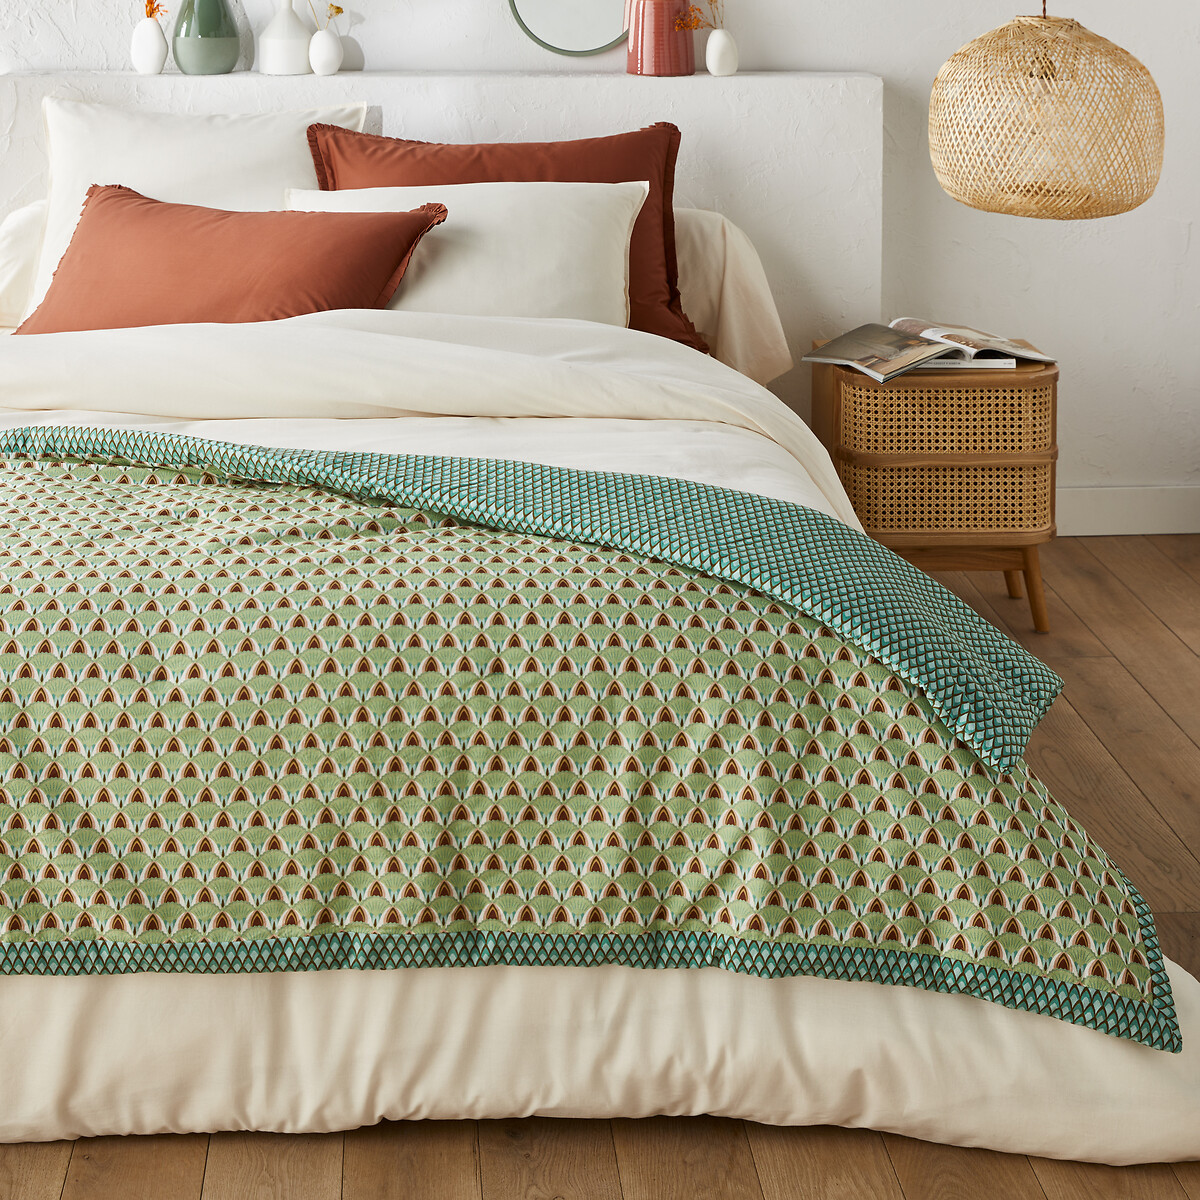 Bettdecke aus gewaschener Baumwolle Kheper von LA REDOUTE INTERIEURS